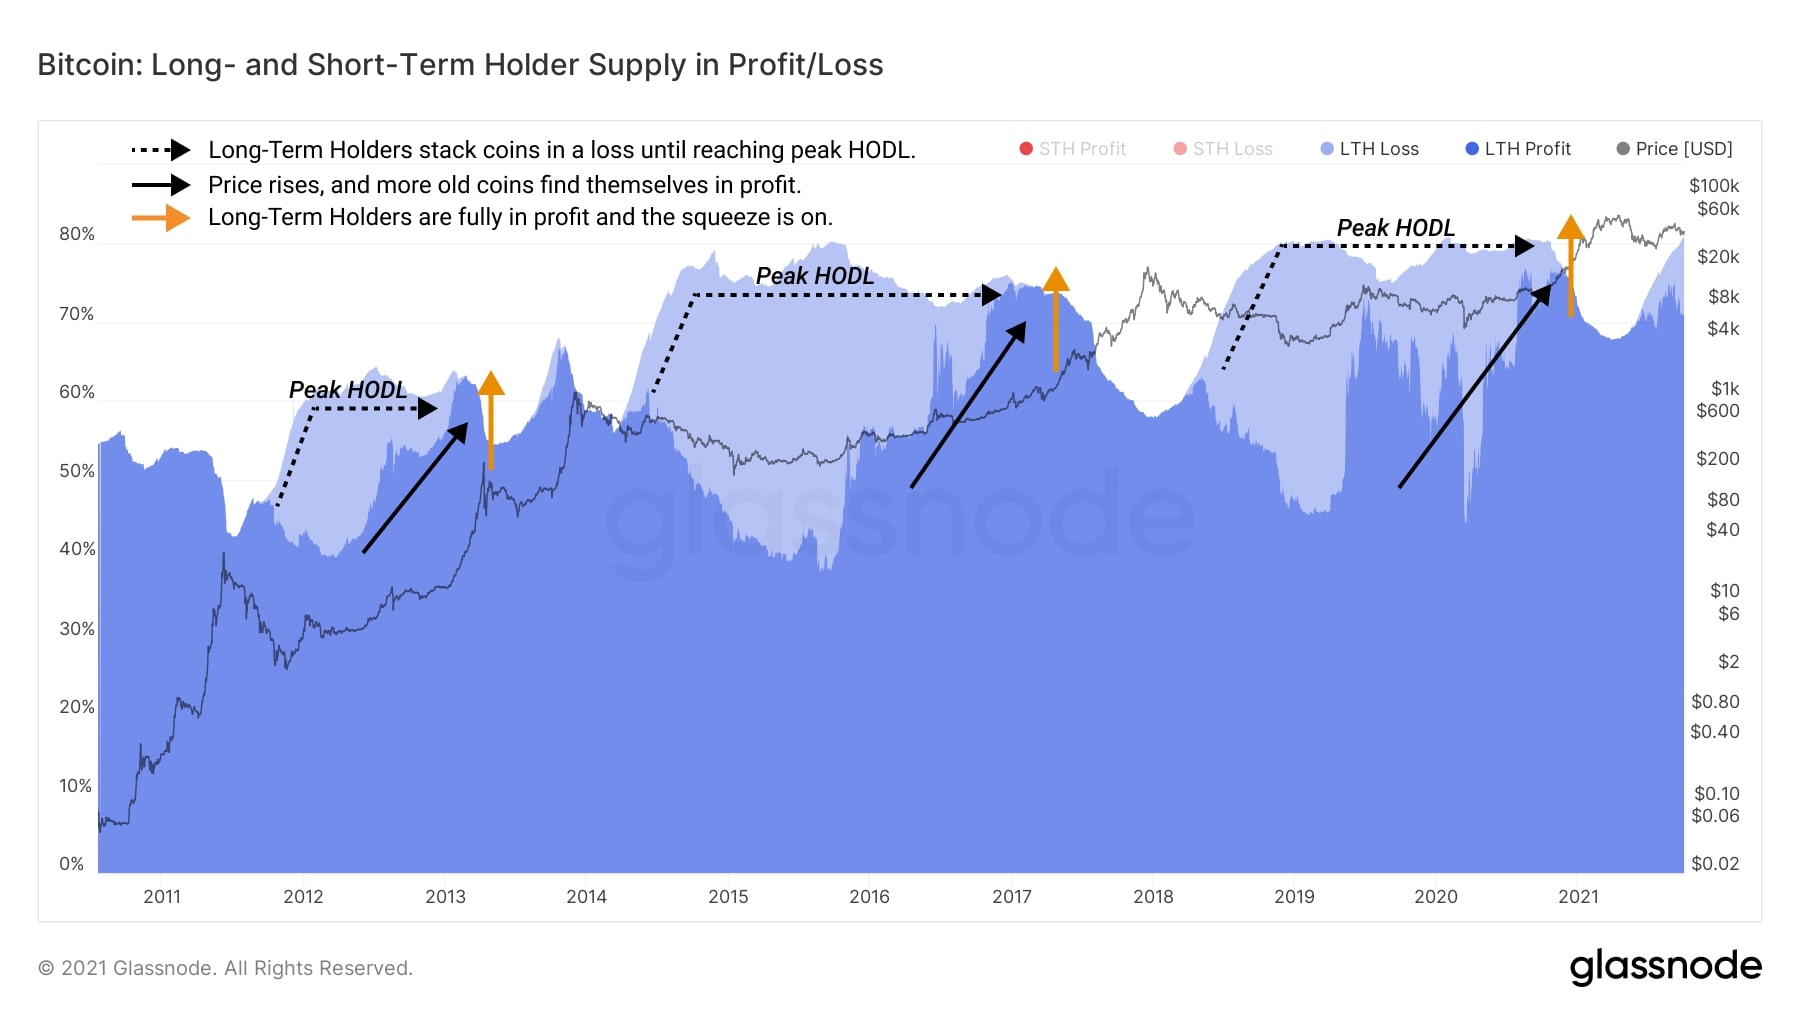 Biểu đồ Bitcoin: Lợi nhuận/ phần lỗ trên các nguồn cung từ Holder ngắn hạn và Holder dài hạn (Nguồn: Glassnode)